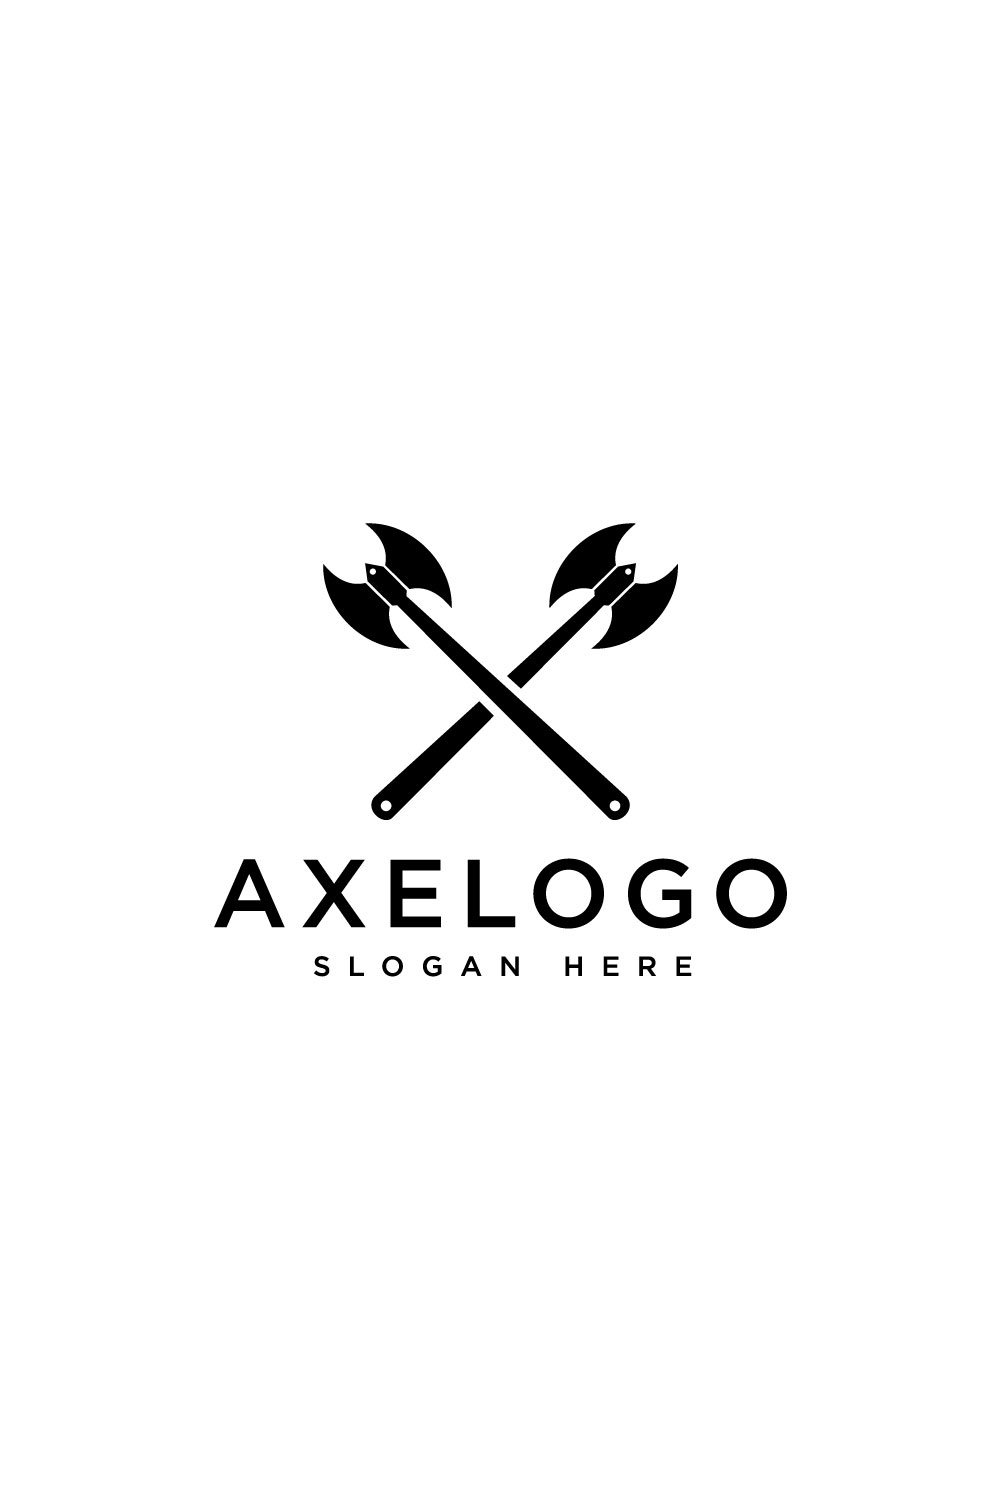 Axe Logo Vector Design - Pinterest.